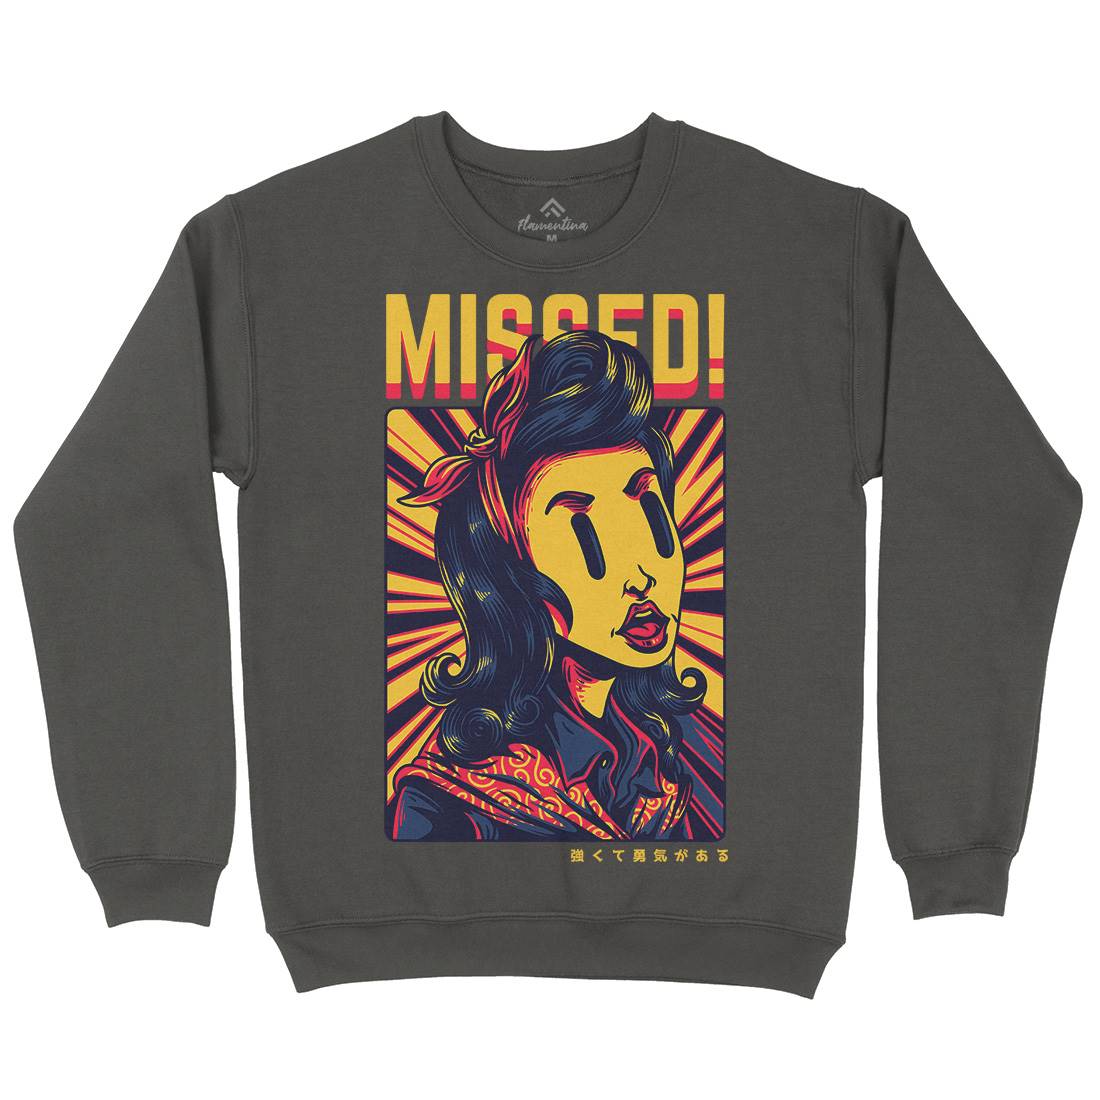 Missed Girl Kids Crew Neck Sweatshirt Retro D654